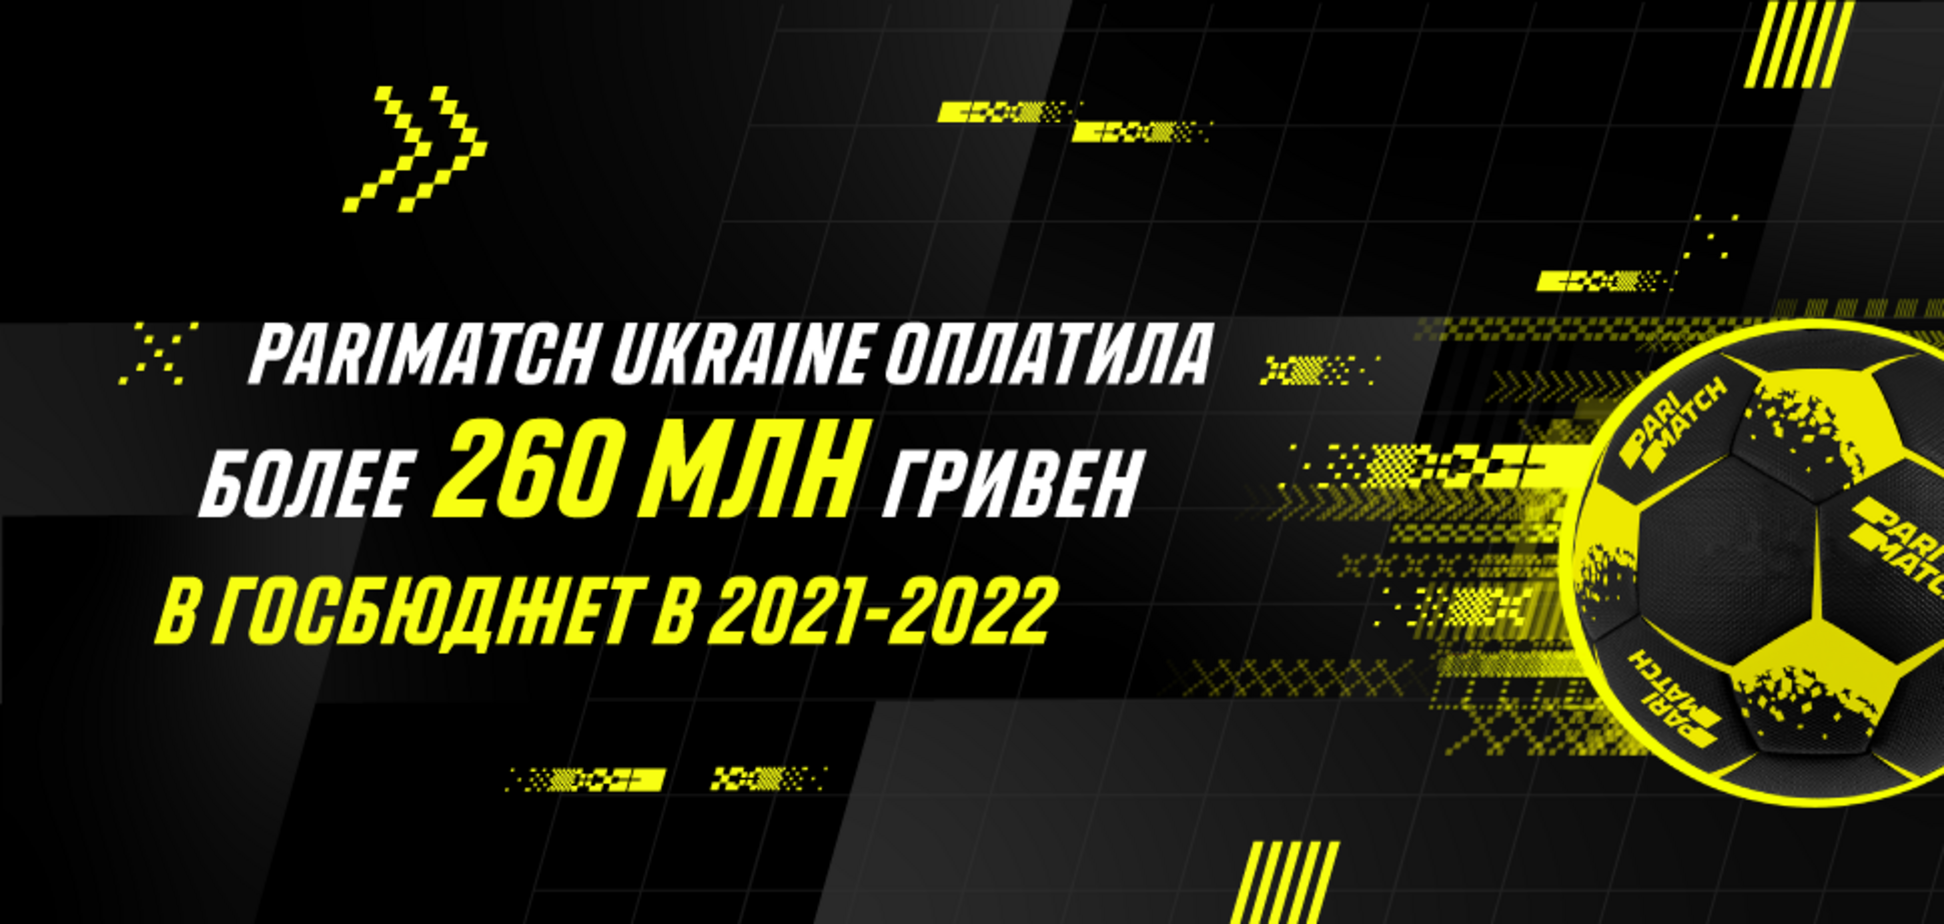 Parimatch Ukraine оплатила более 260 млн гривен в госбюджет в 2021-2022 в поддержку спорта, медицины и образования